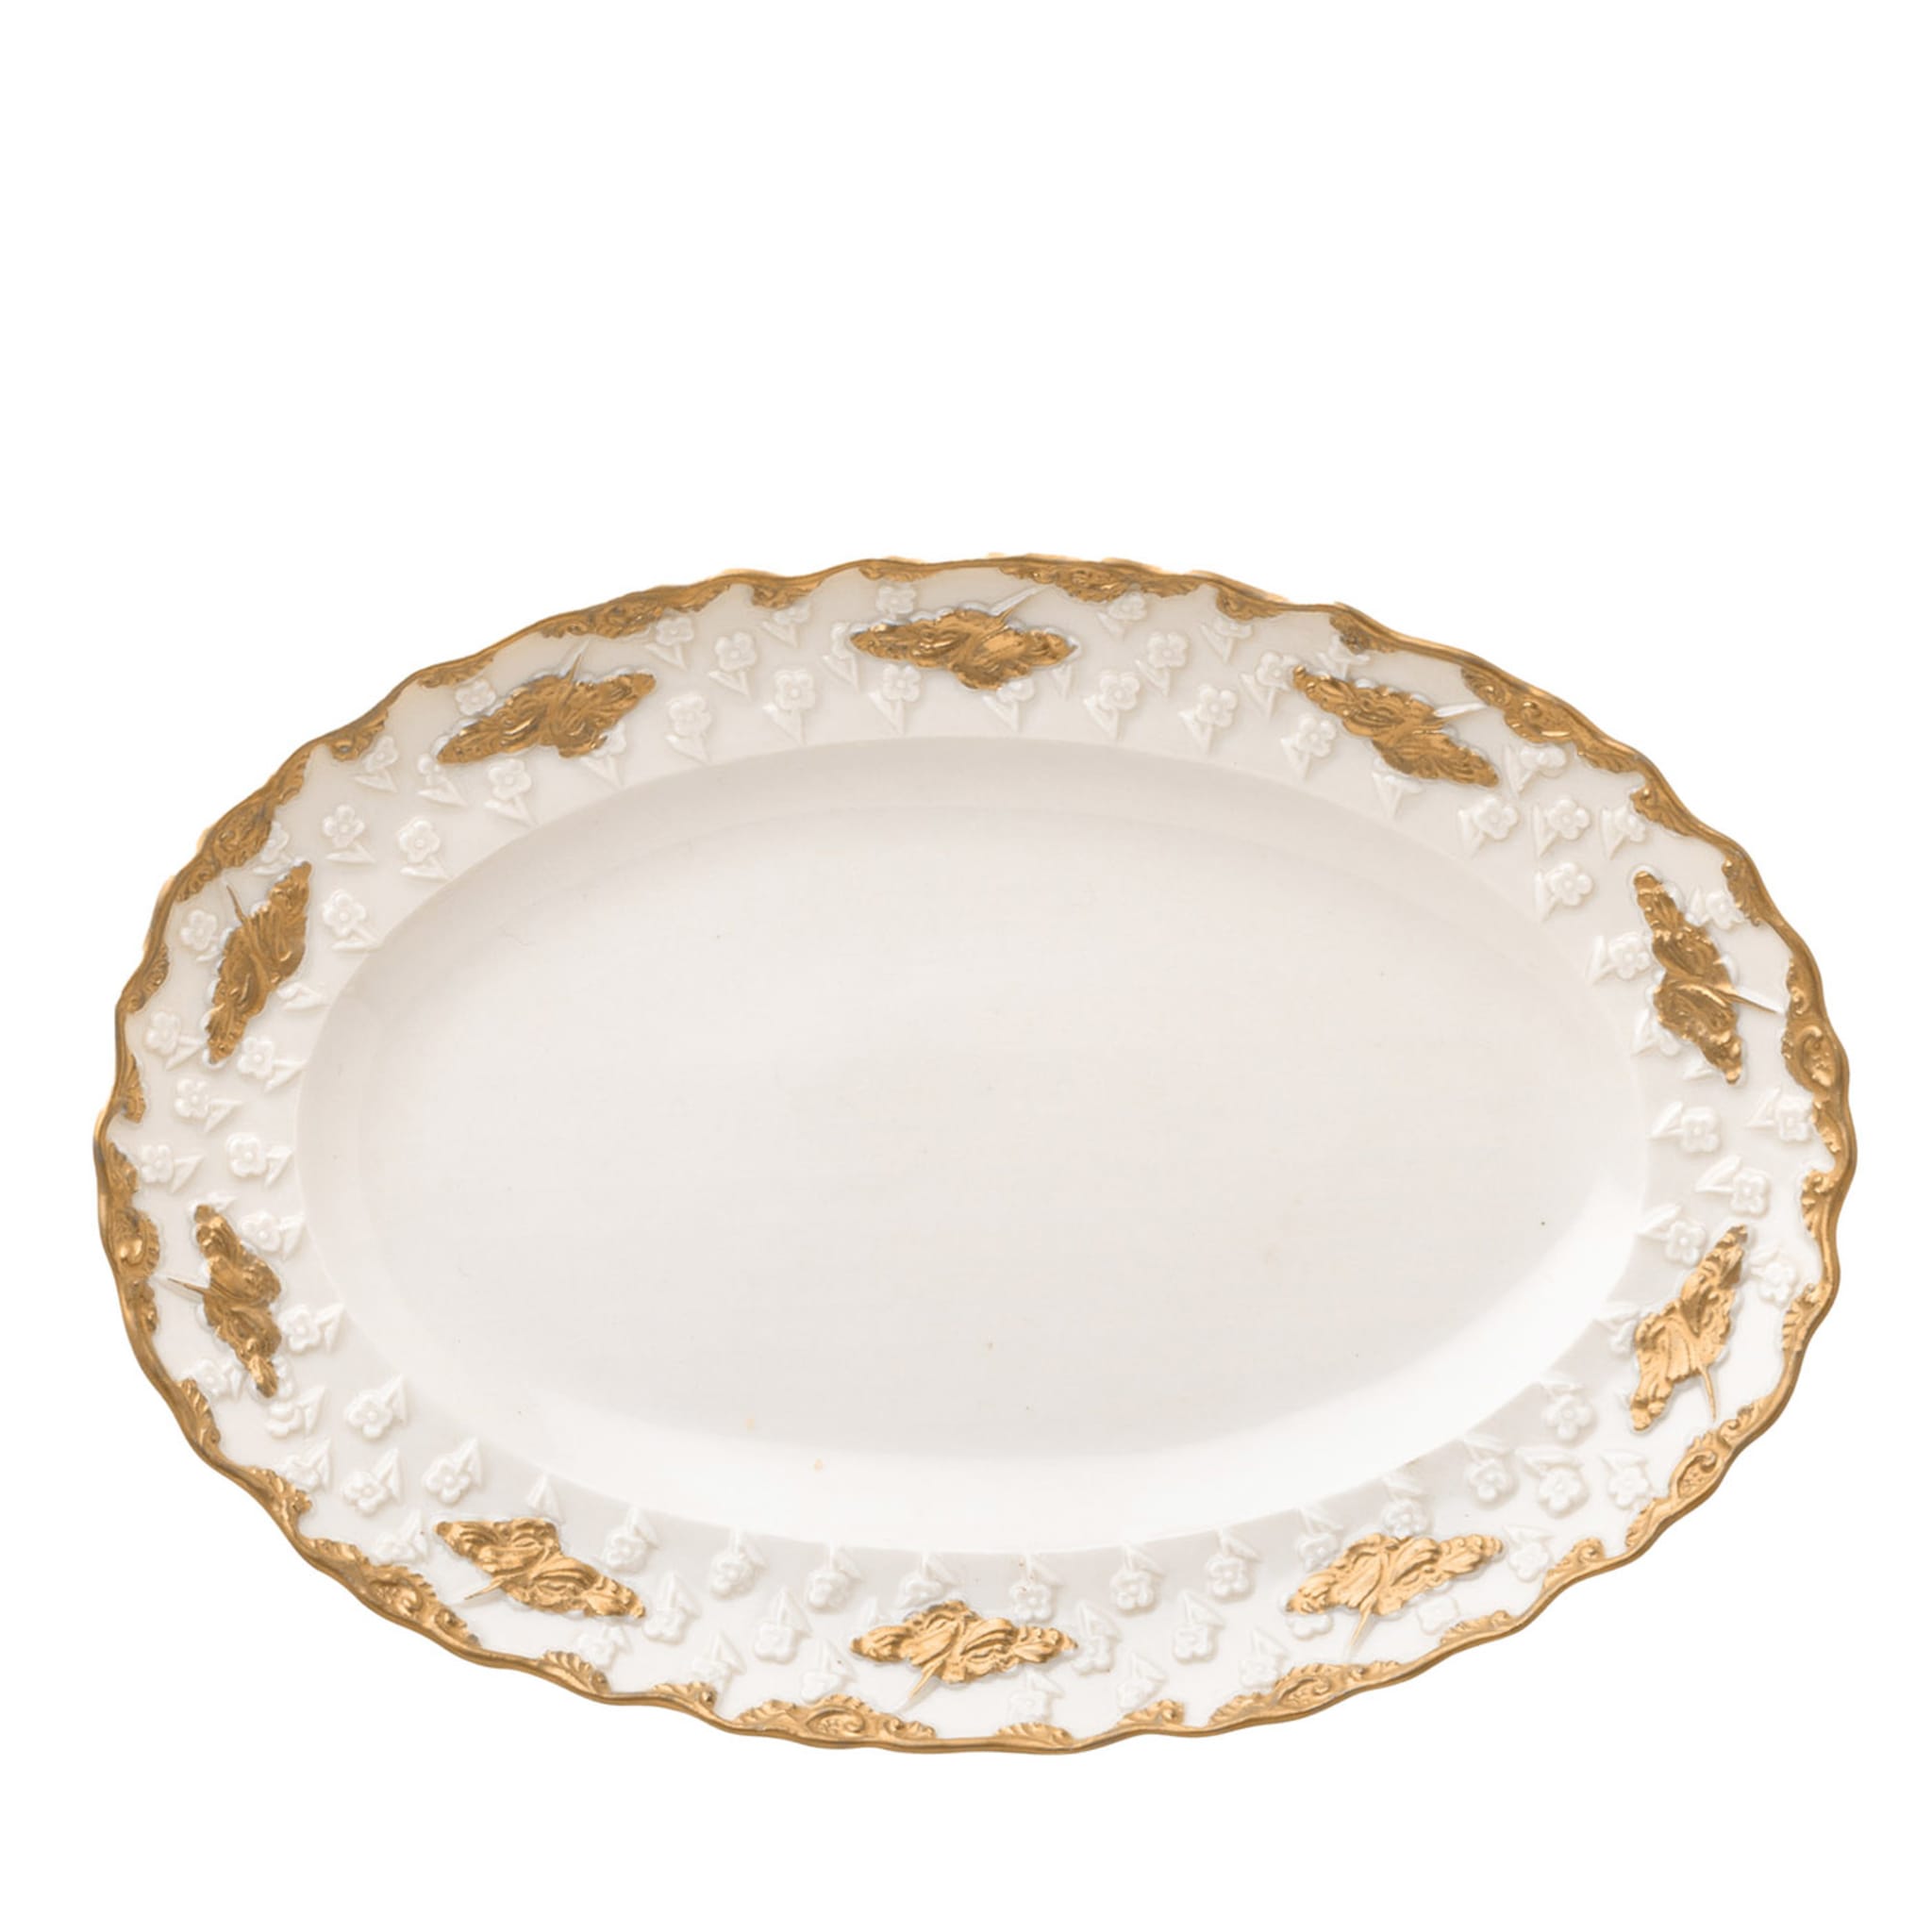 Lucia Petit plat de service ovale blanc et or - Vue principale